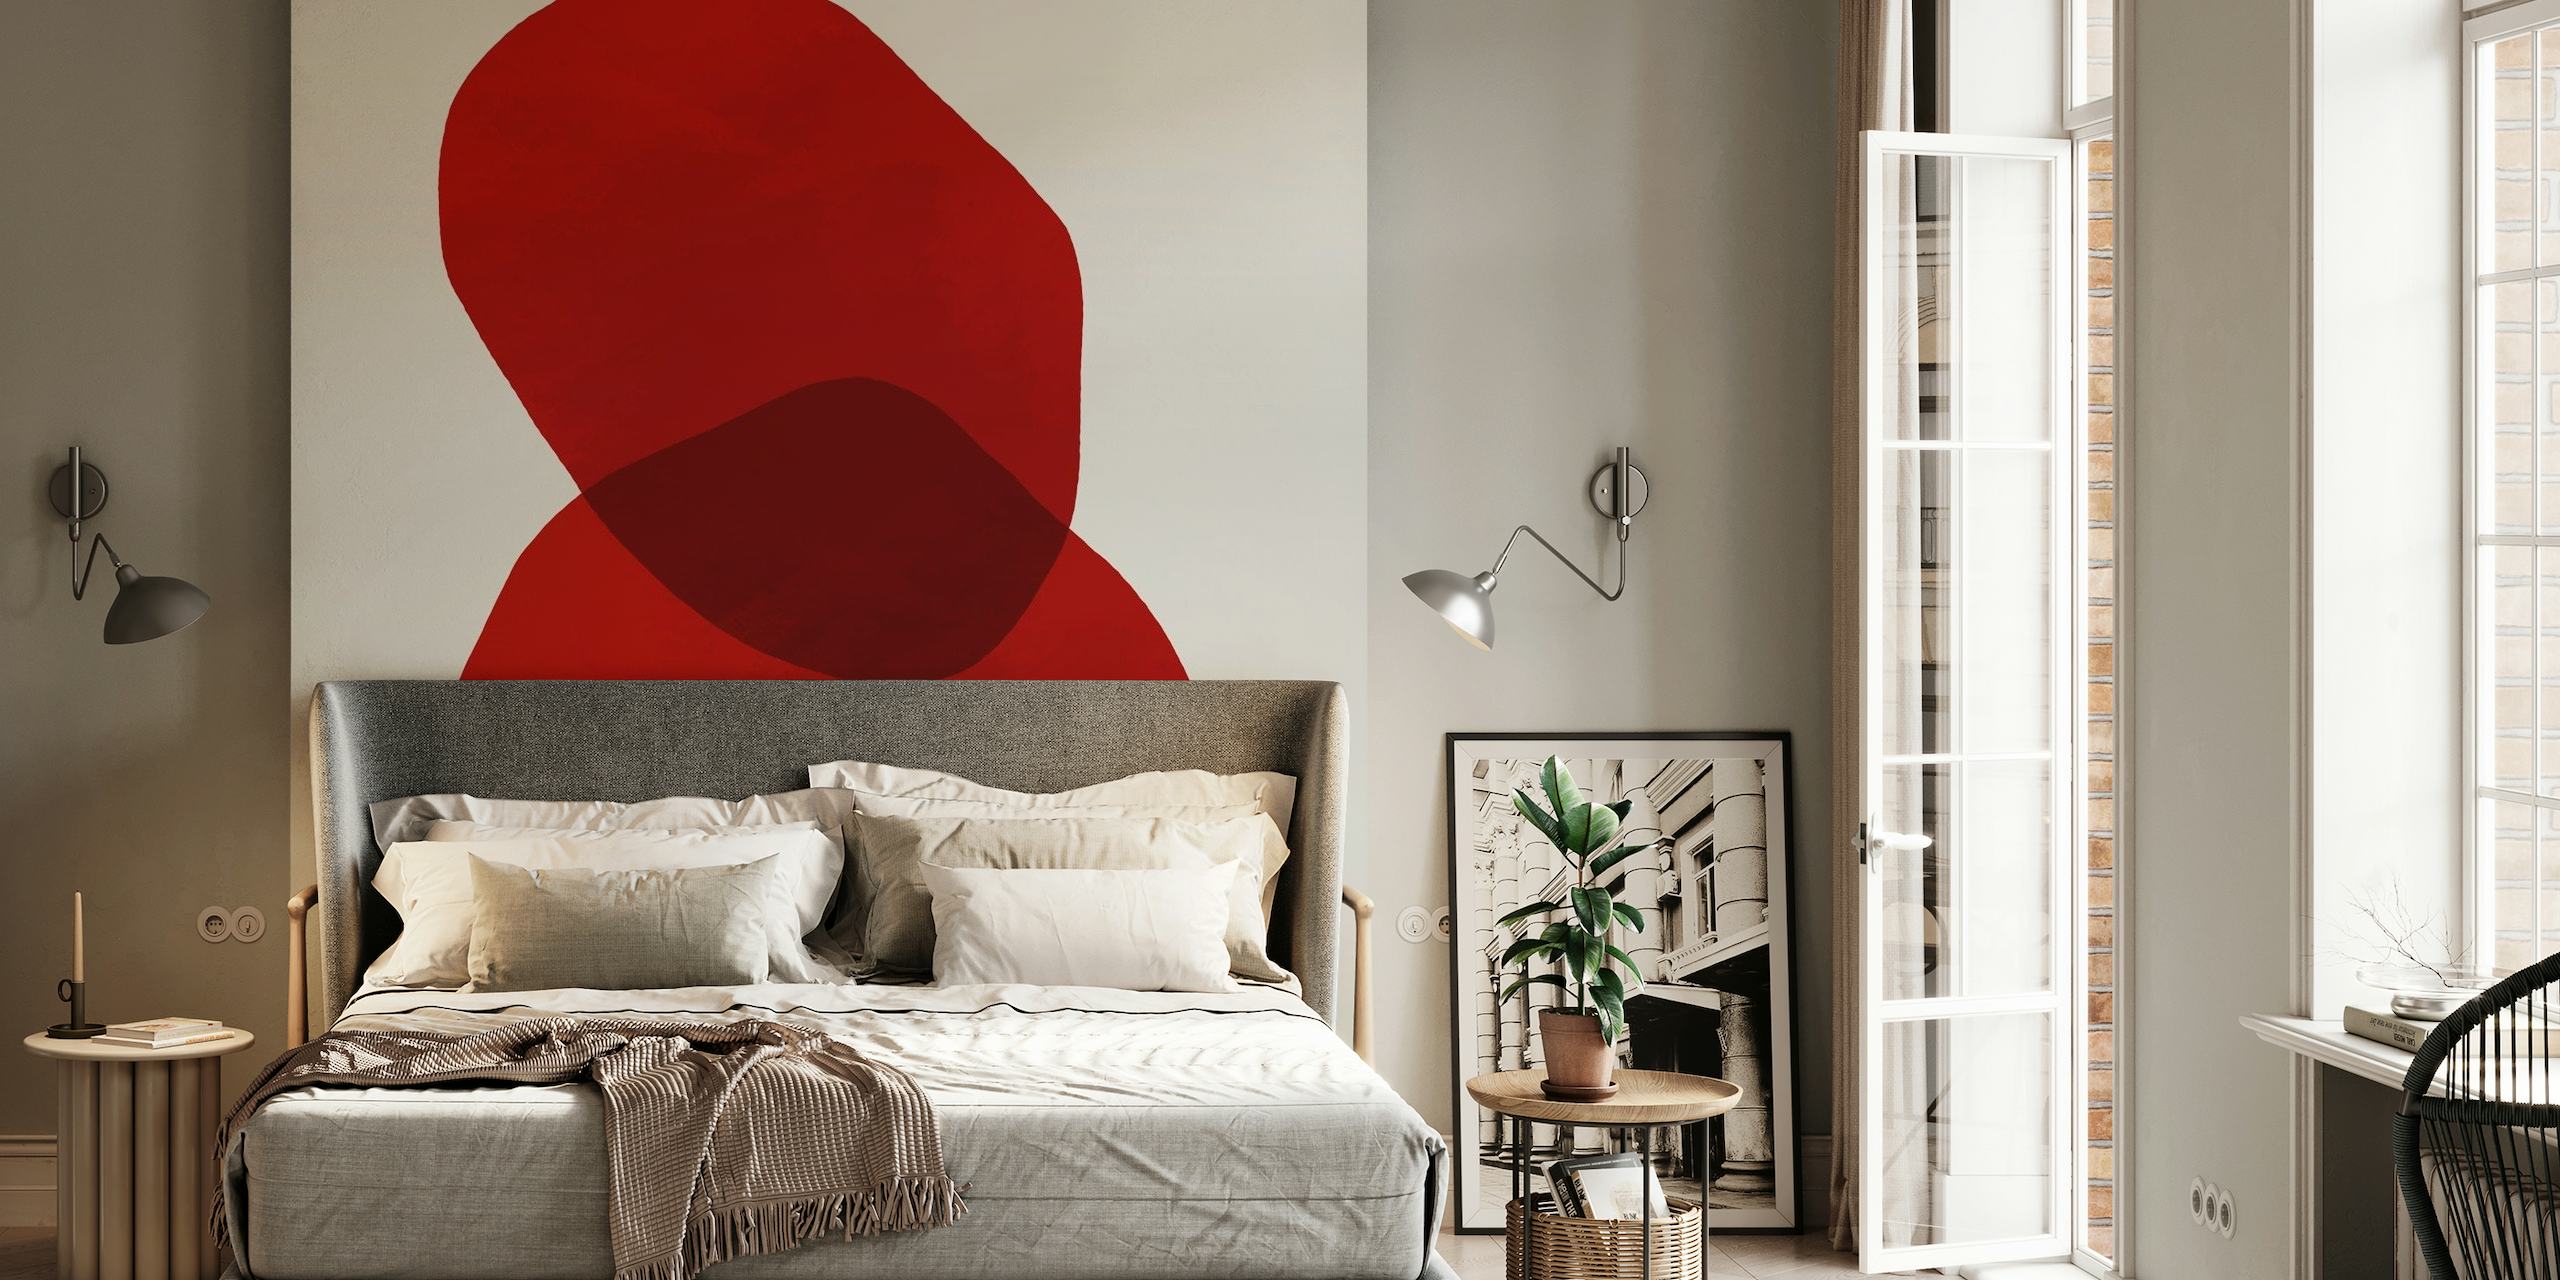 Abstrakta röda cirklar överlappande väggmålning